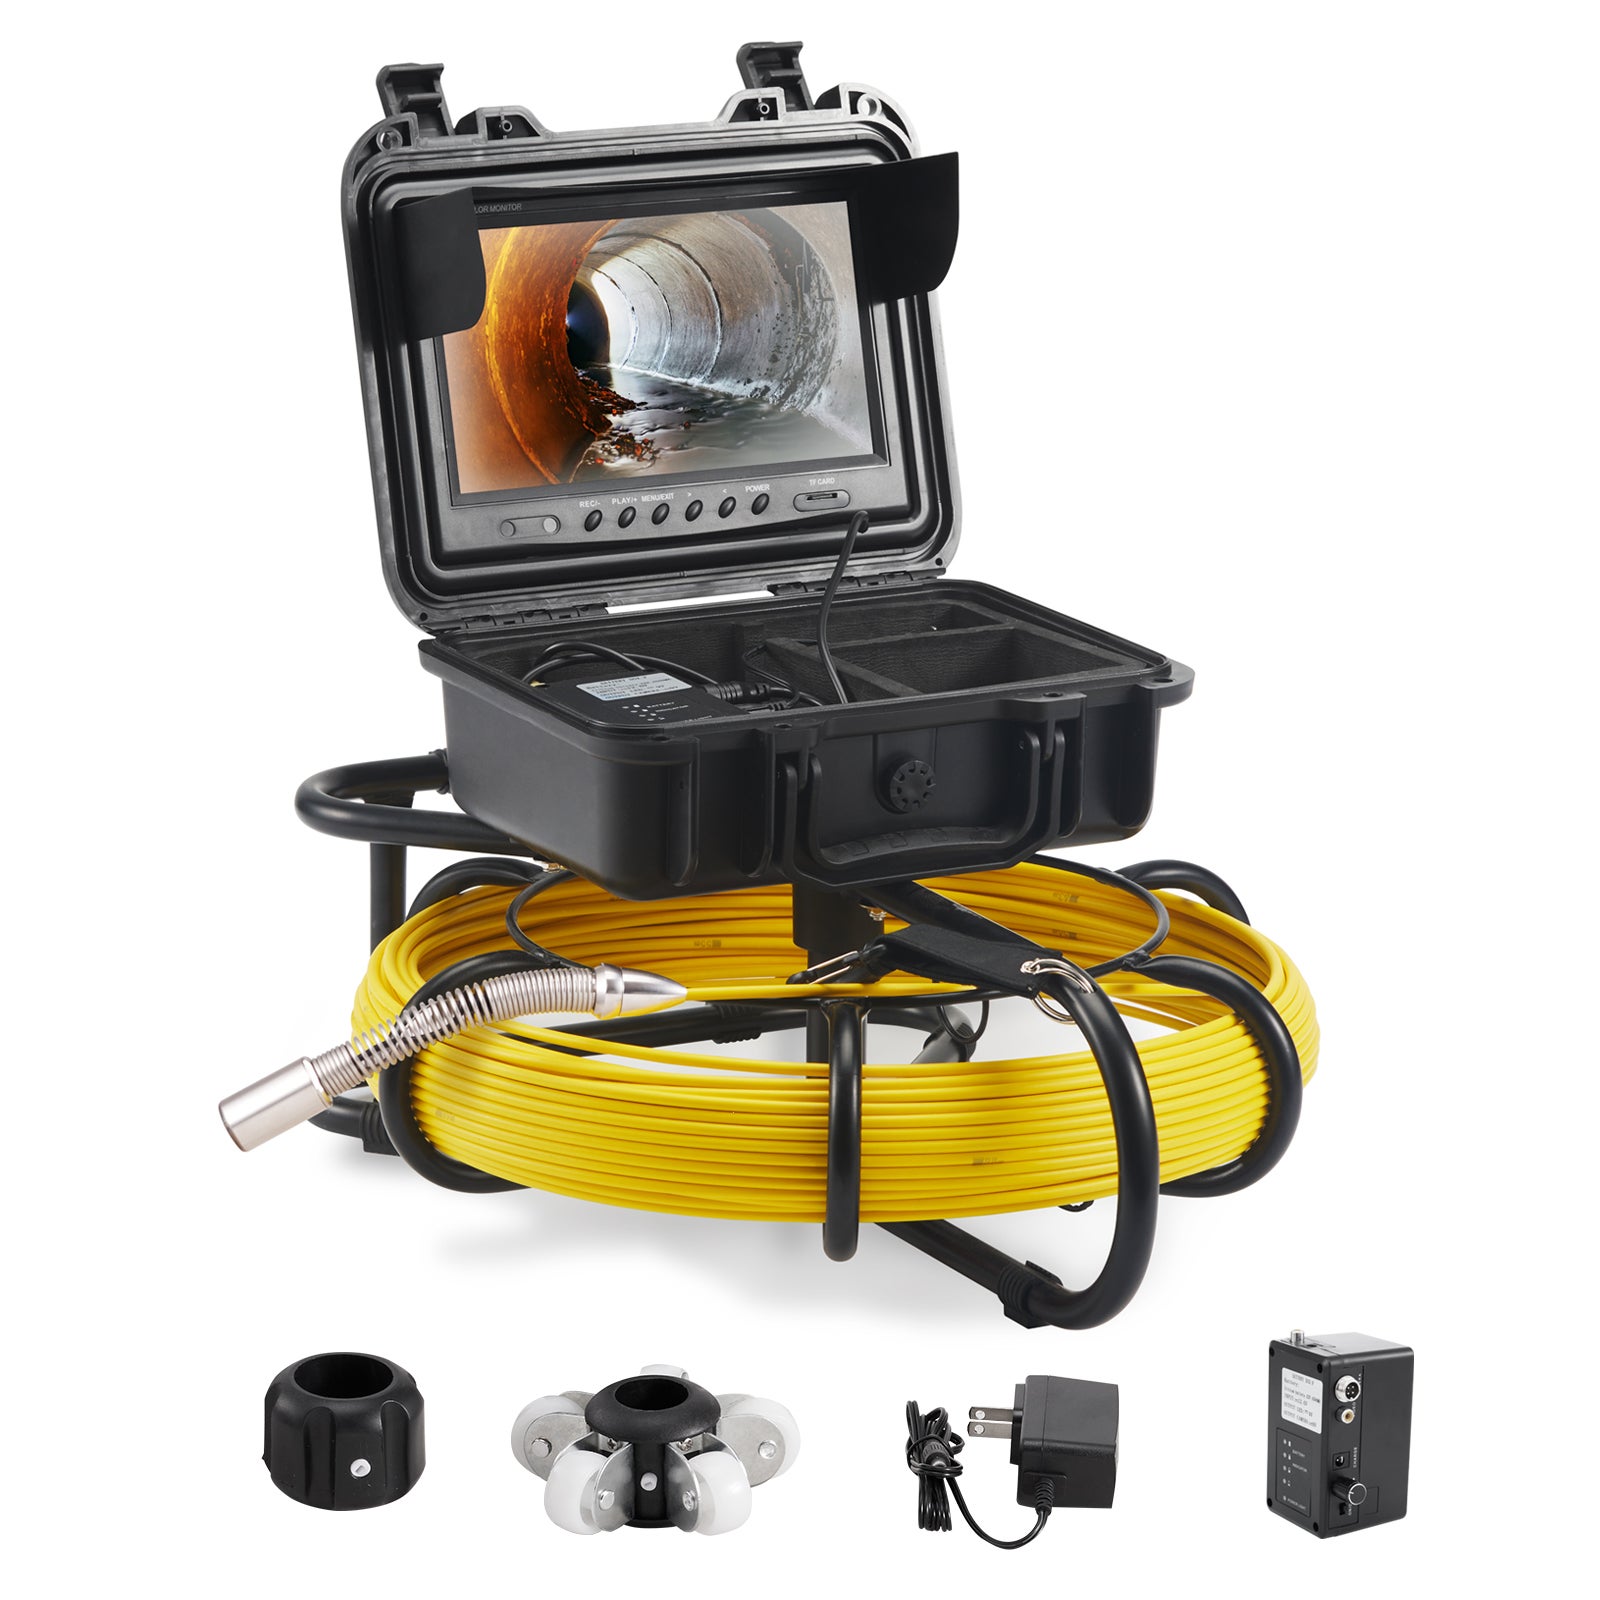 Caméra inspection canalisation - 20 m - 12 LED - Écran 7 pouces